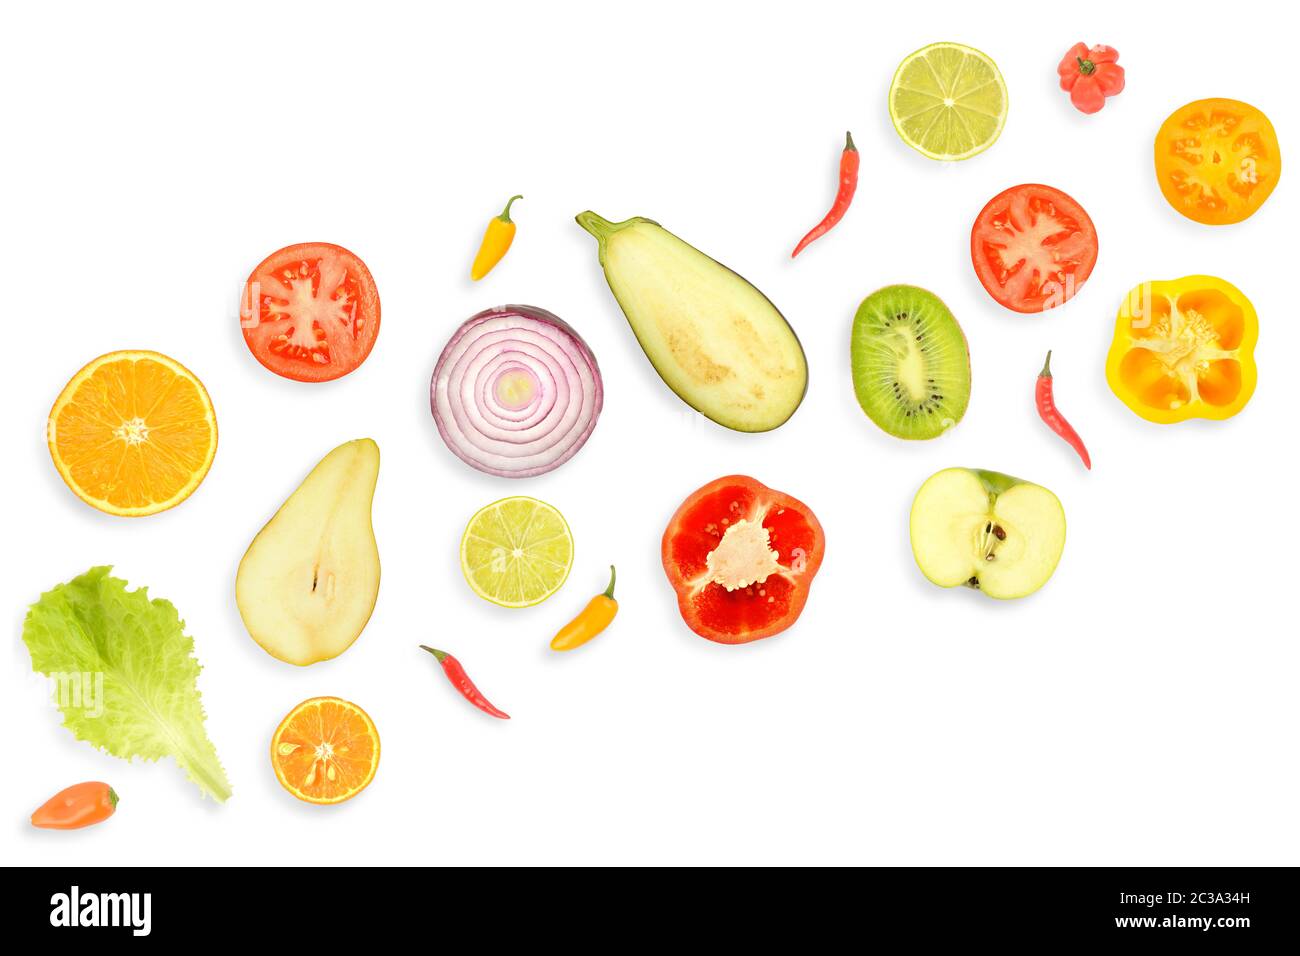 Bannière de légumes et de fruits frais et sains isolés sur fond blanc. Banque D'Images